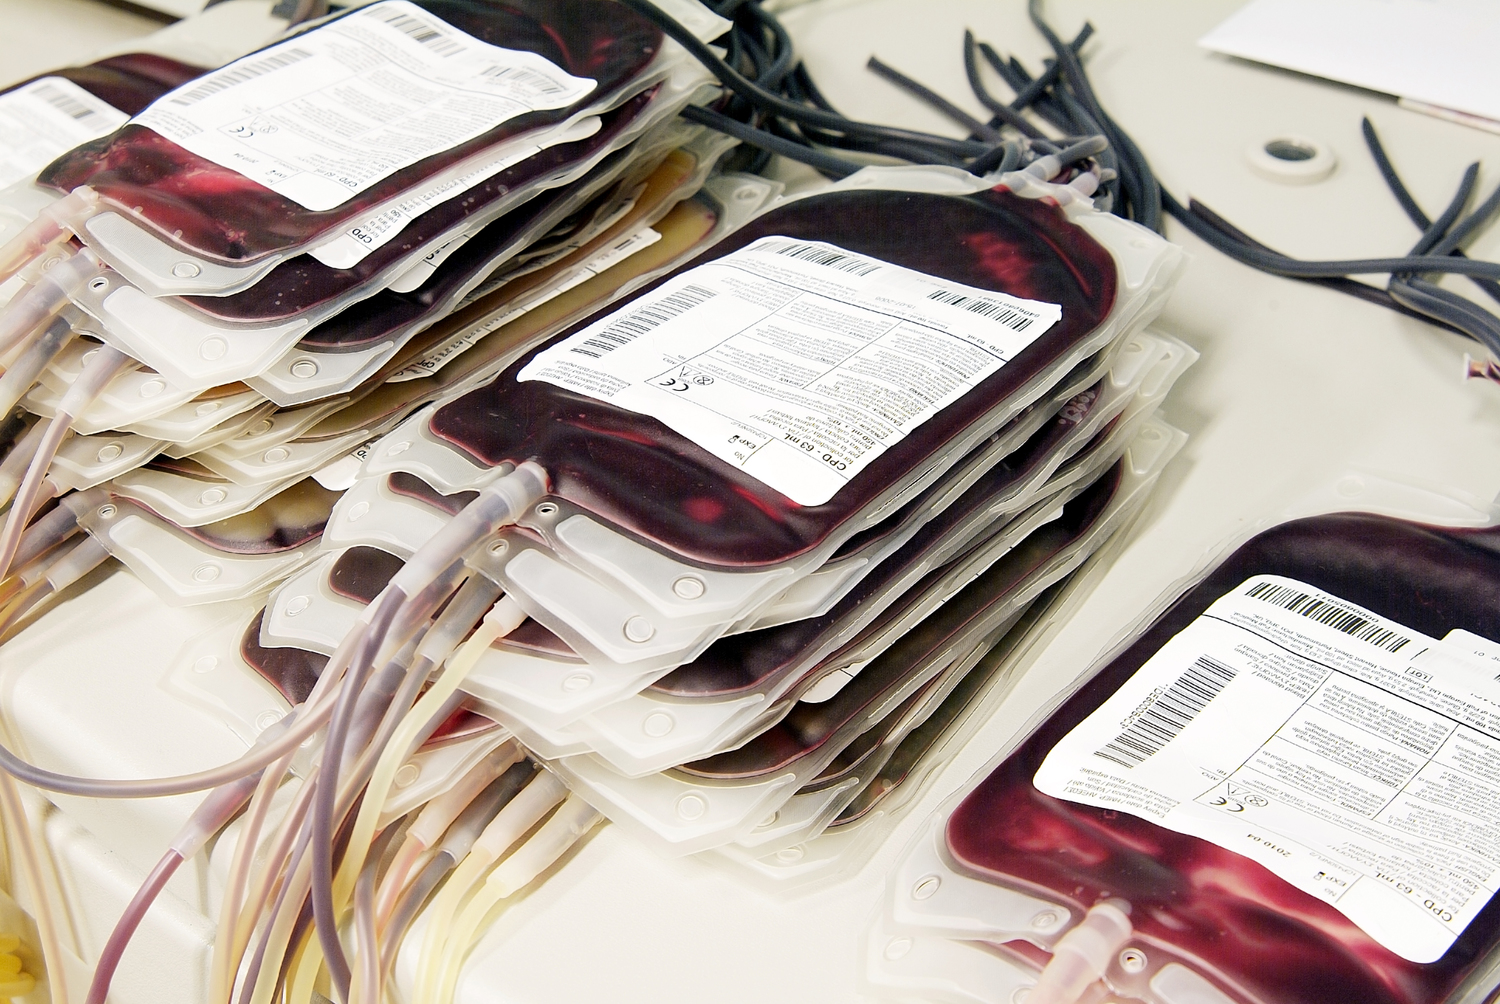 Das Studienziel war die Vermeidung von Bluttransfusionen über einen Zeitraum von zwölf Wochen.